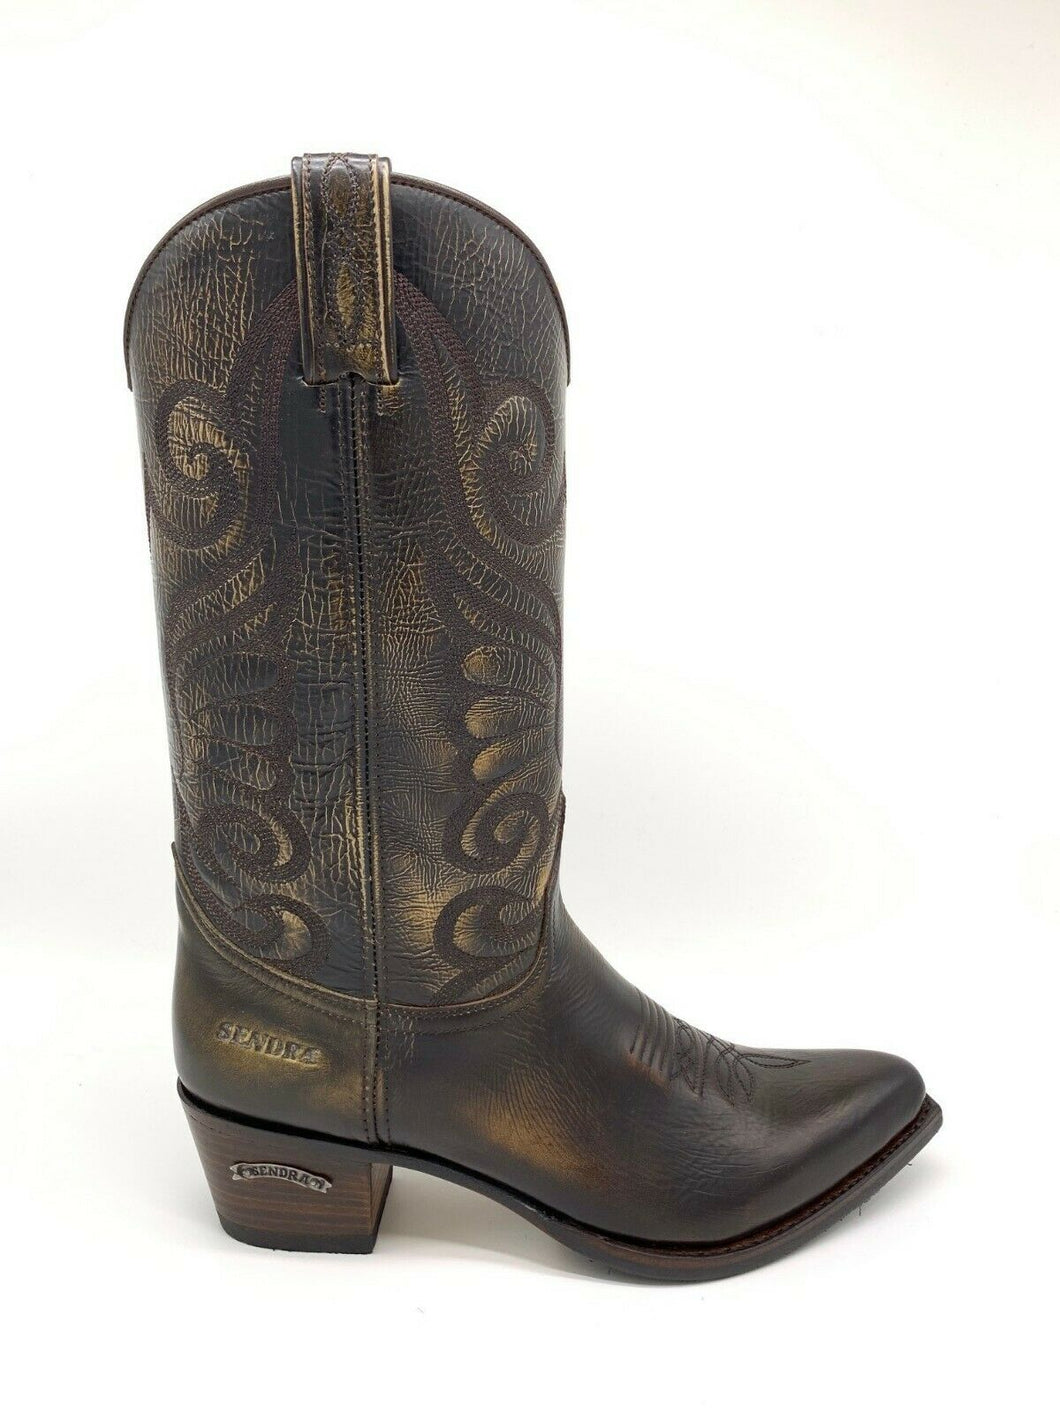 SENDRA women's boots western boots cowboy boots biker boots 11627